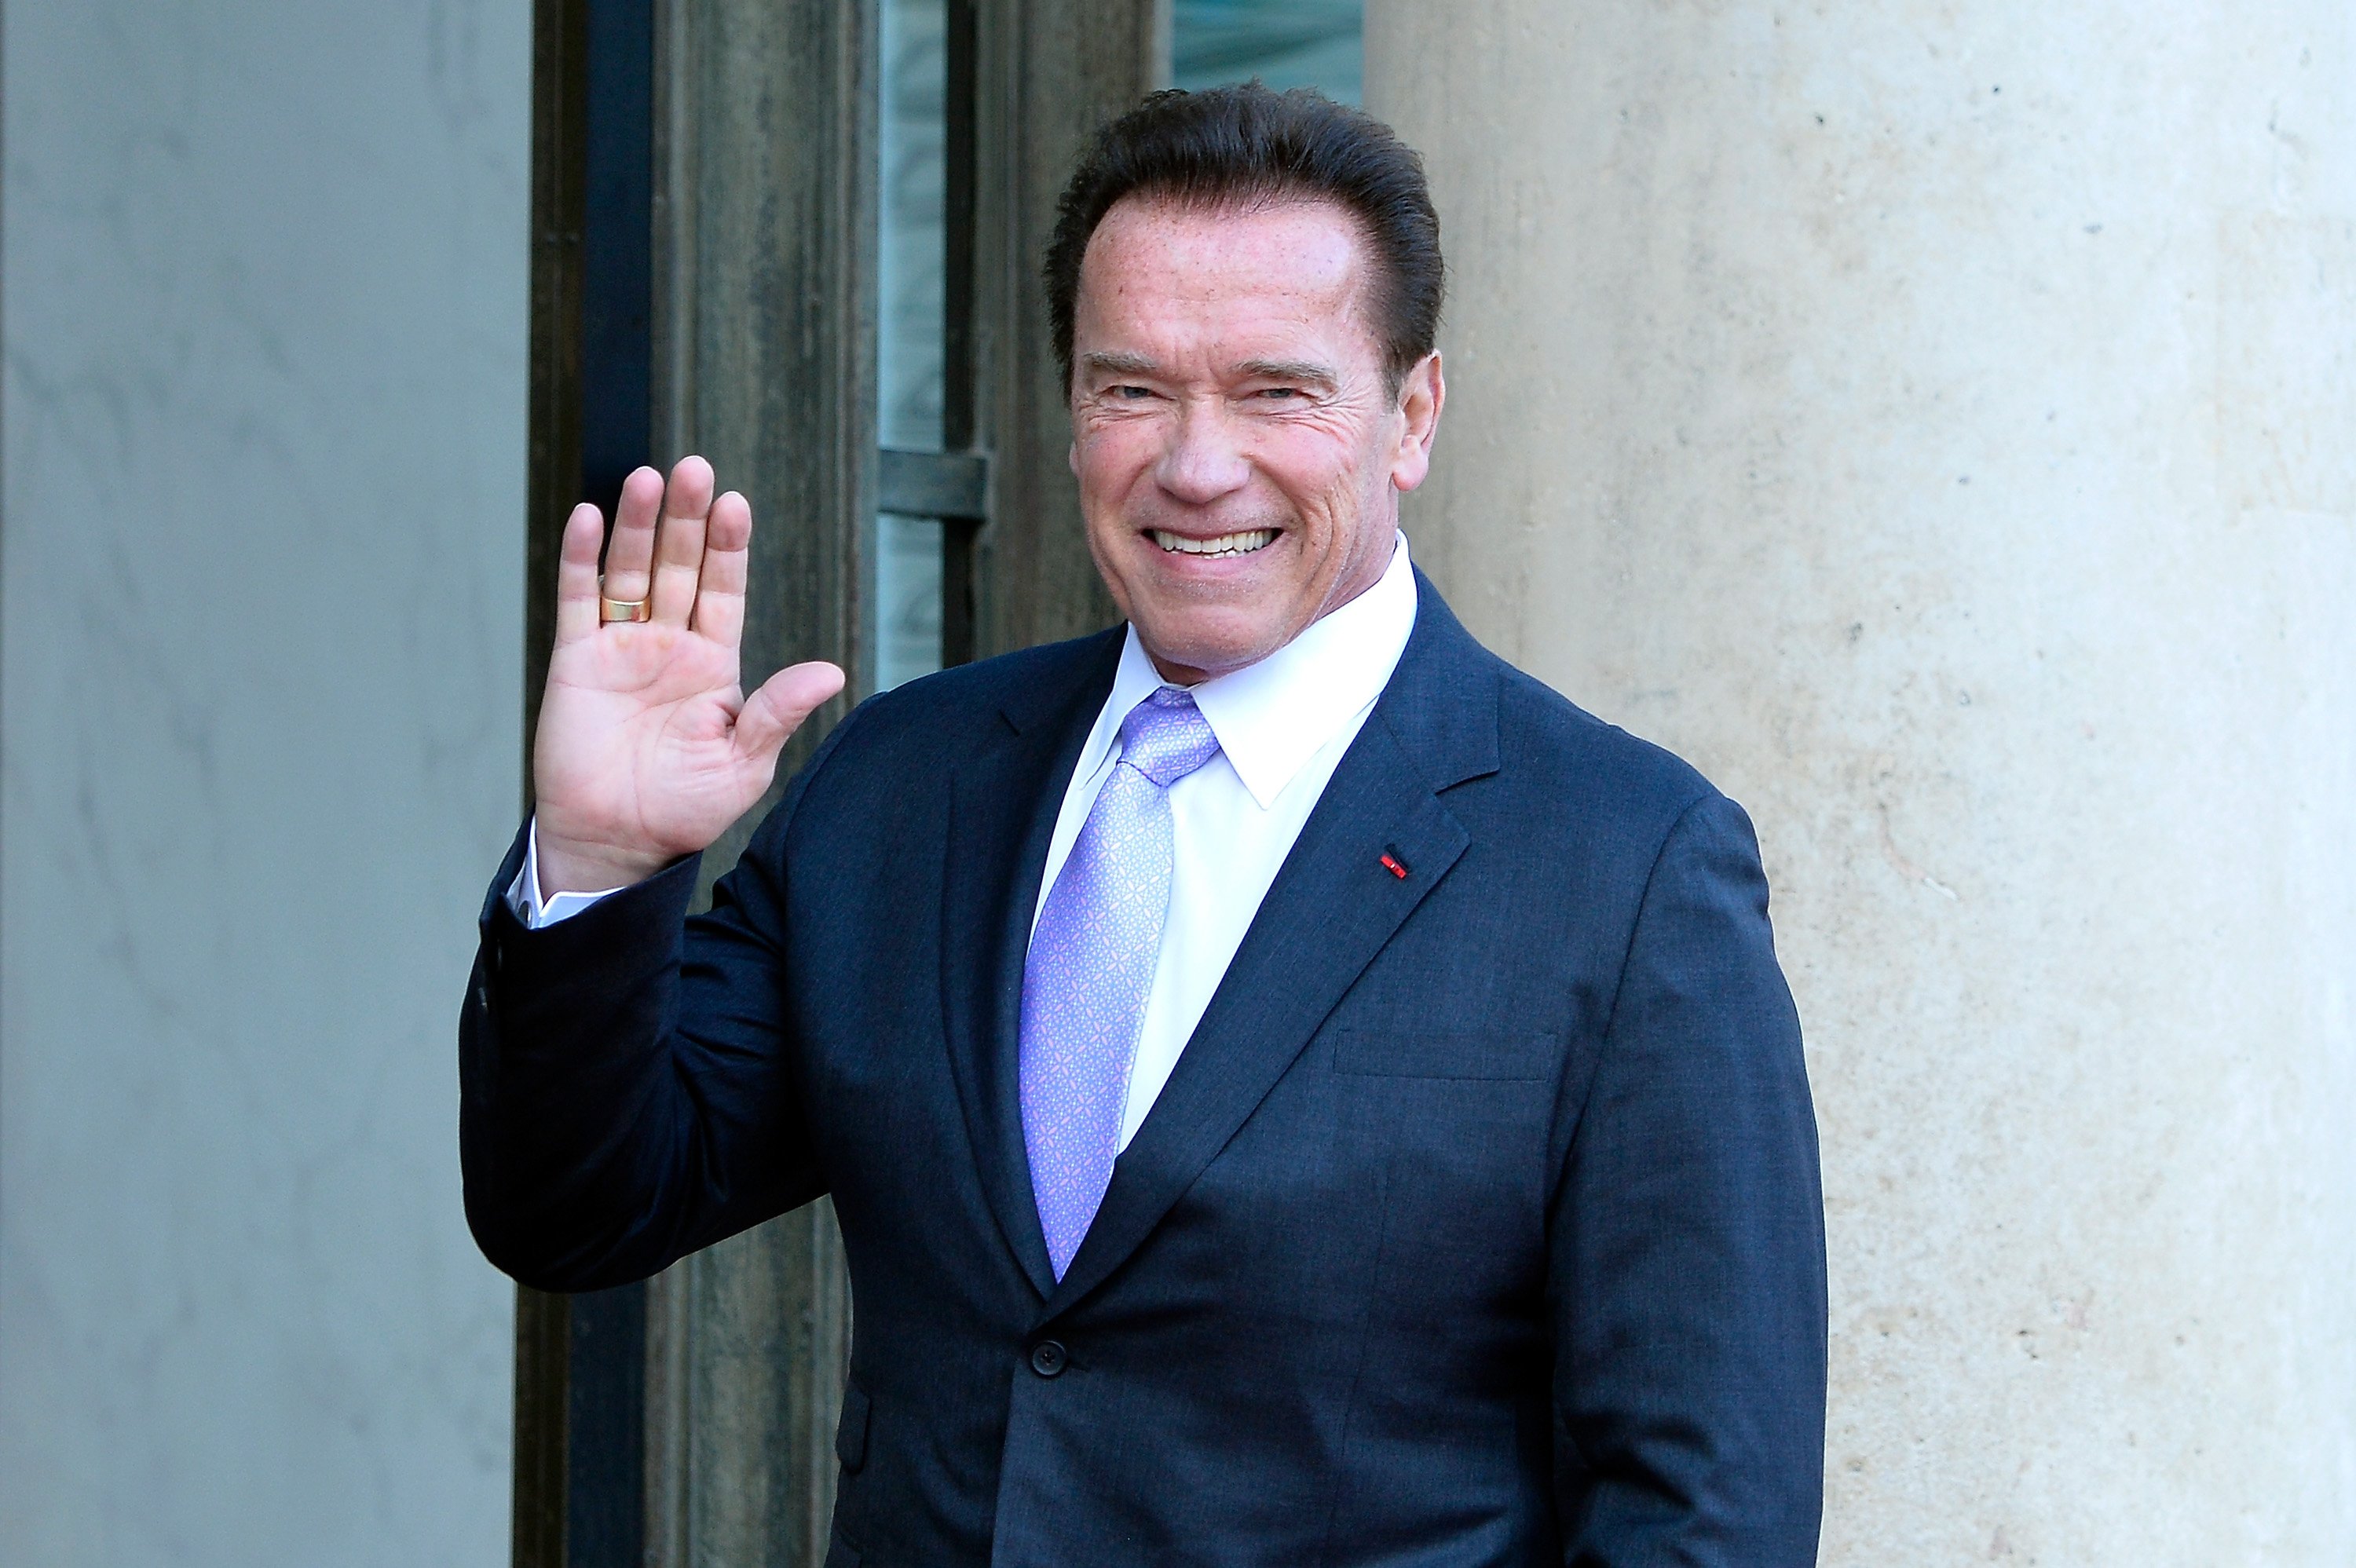 Arnold Schwarzenegger arrive pour une réunion avec le président français Emmanuel Macron en 2017. | Source: Getty Images